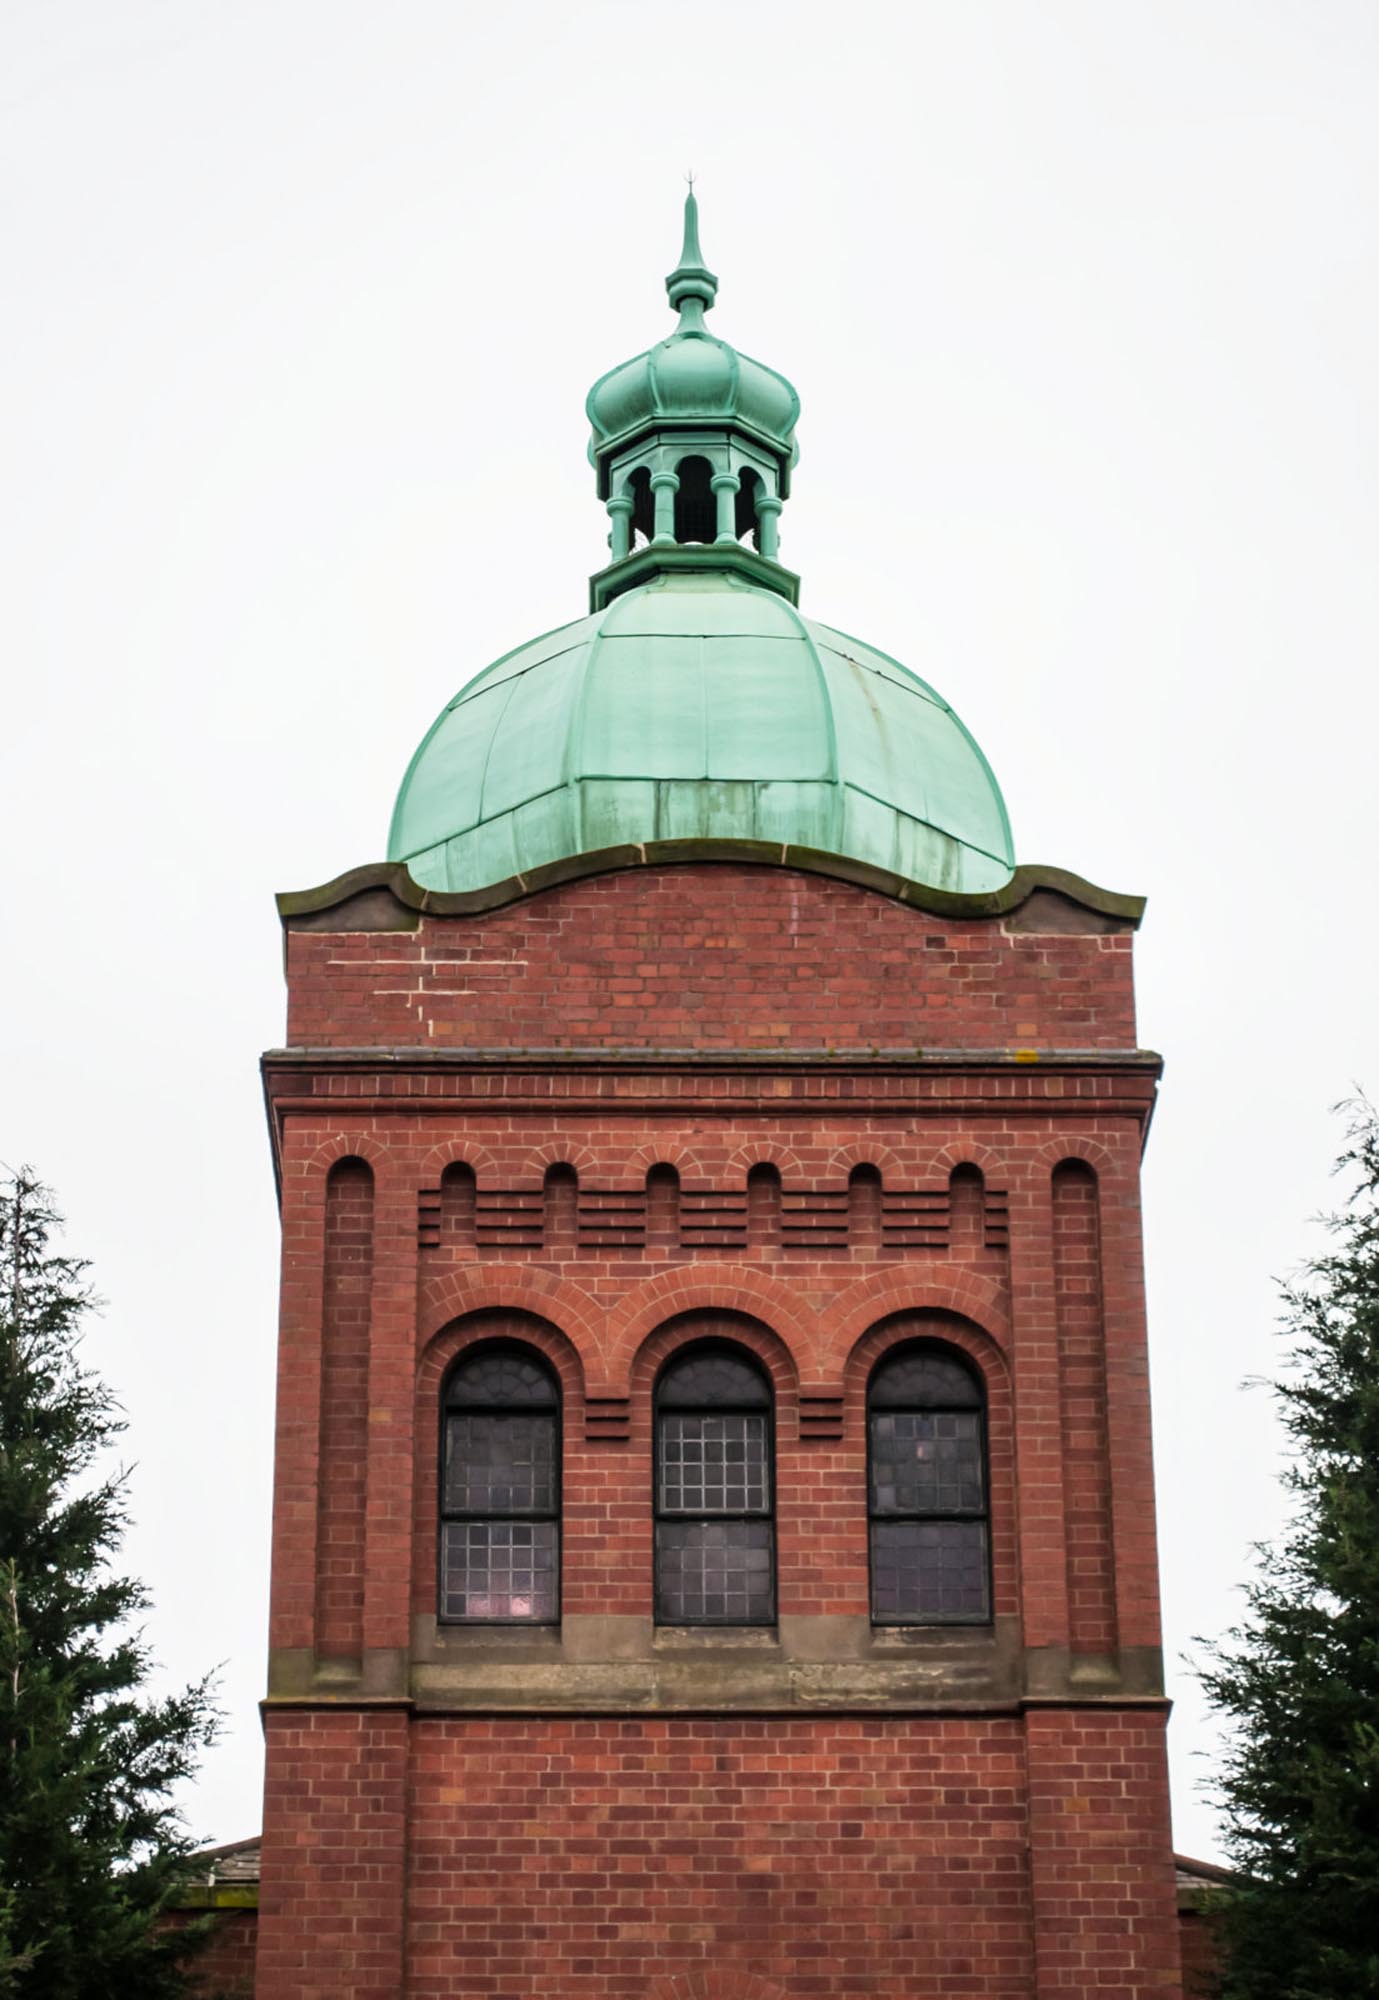 The iconic copper dome -